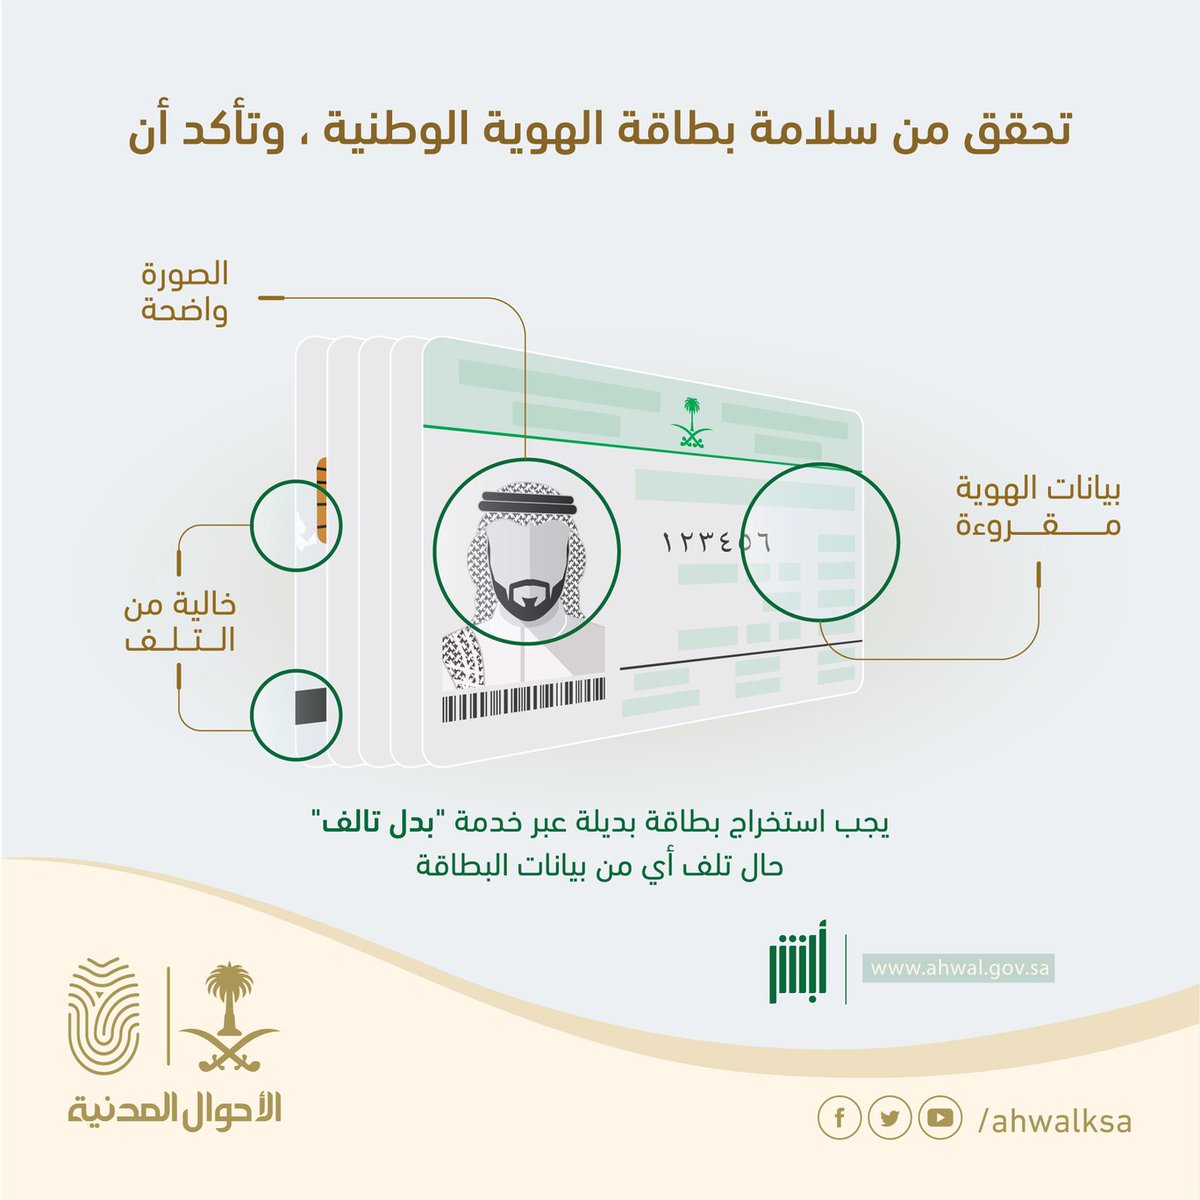 بطاقة الهوية الوطنية السعودية الجديدة 1444